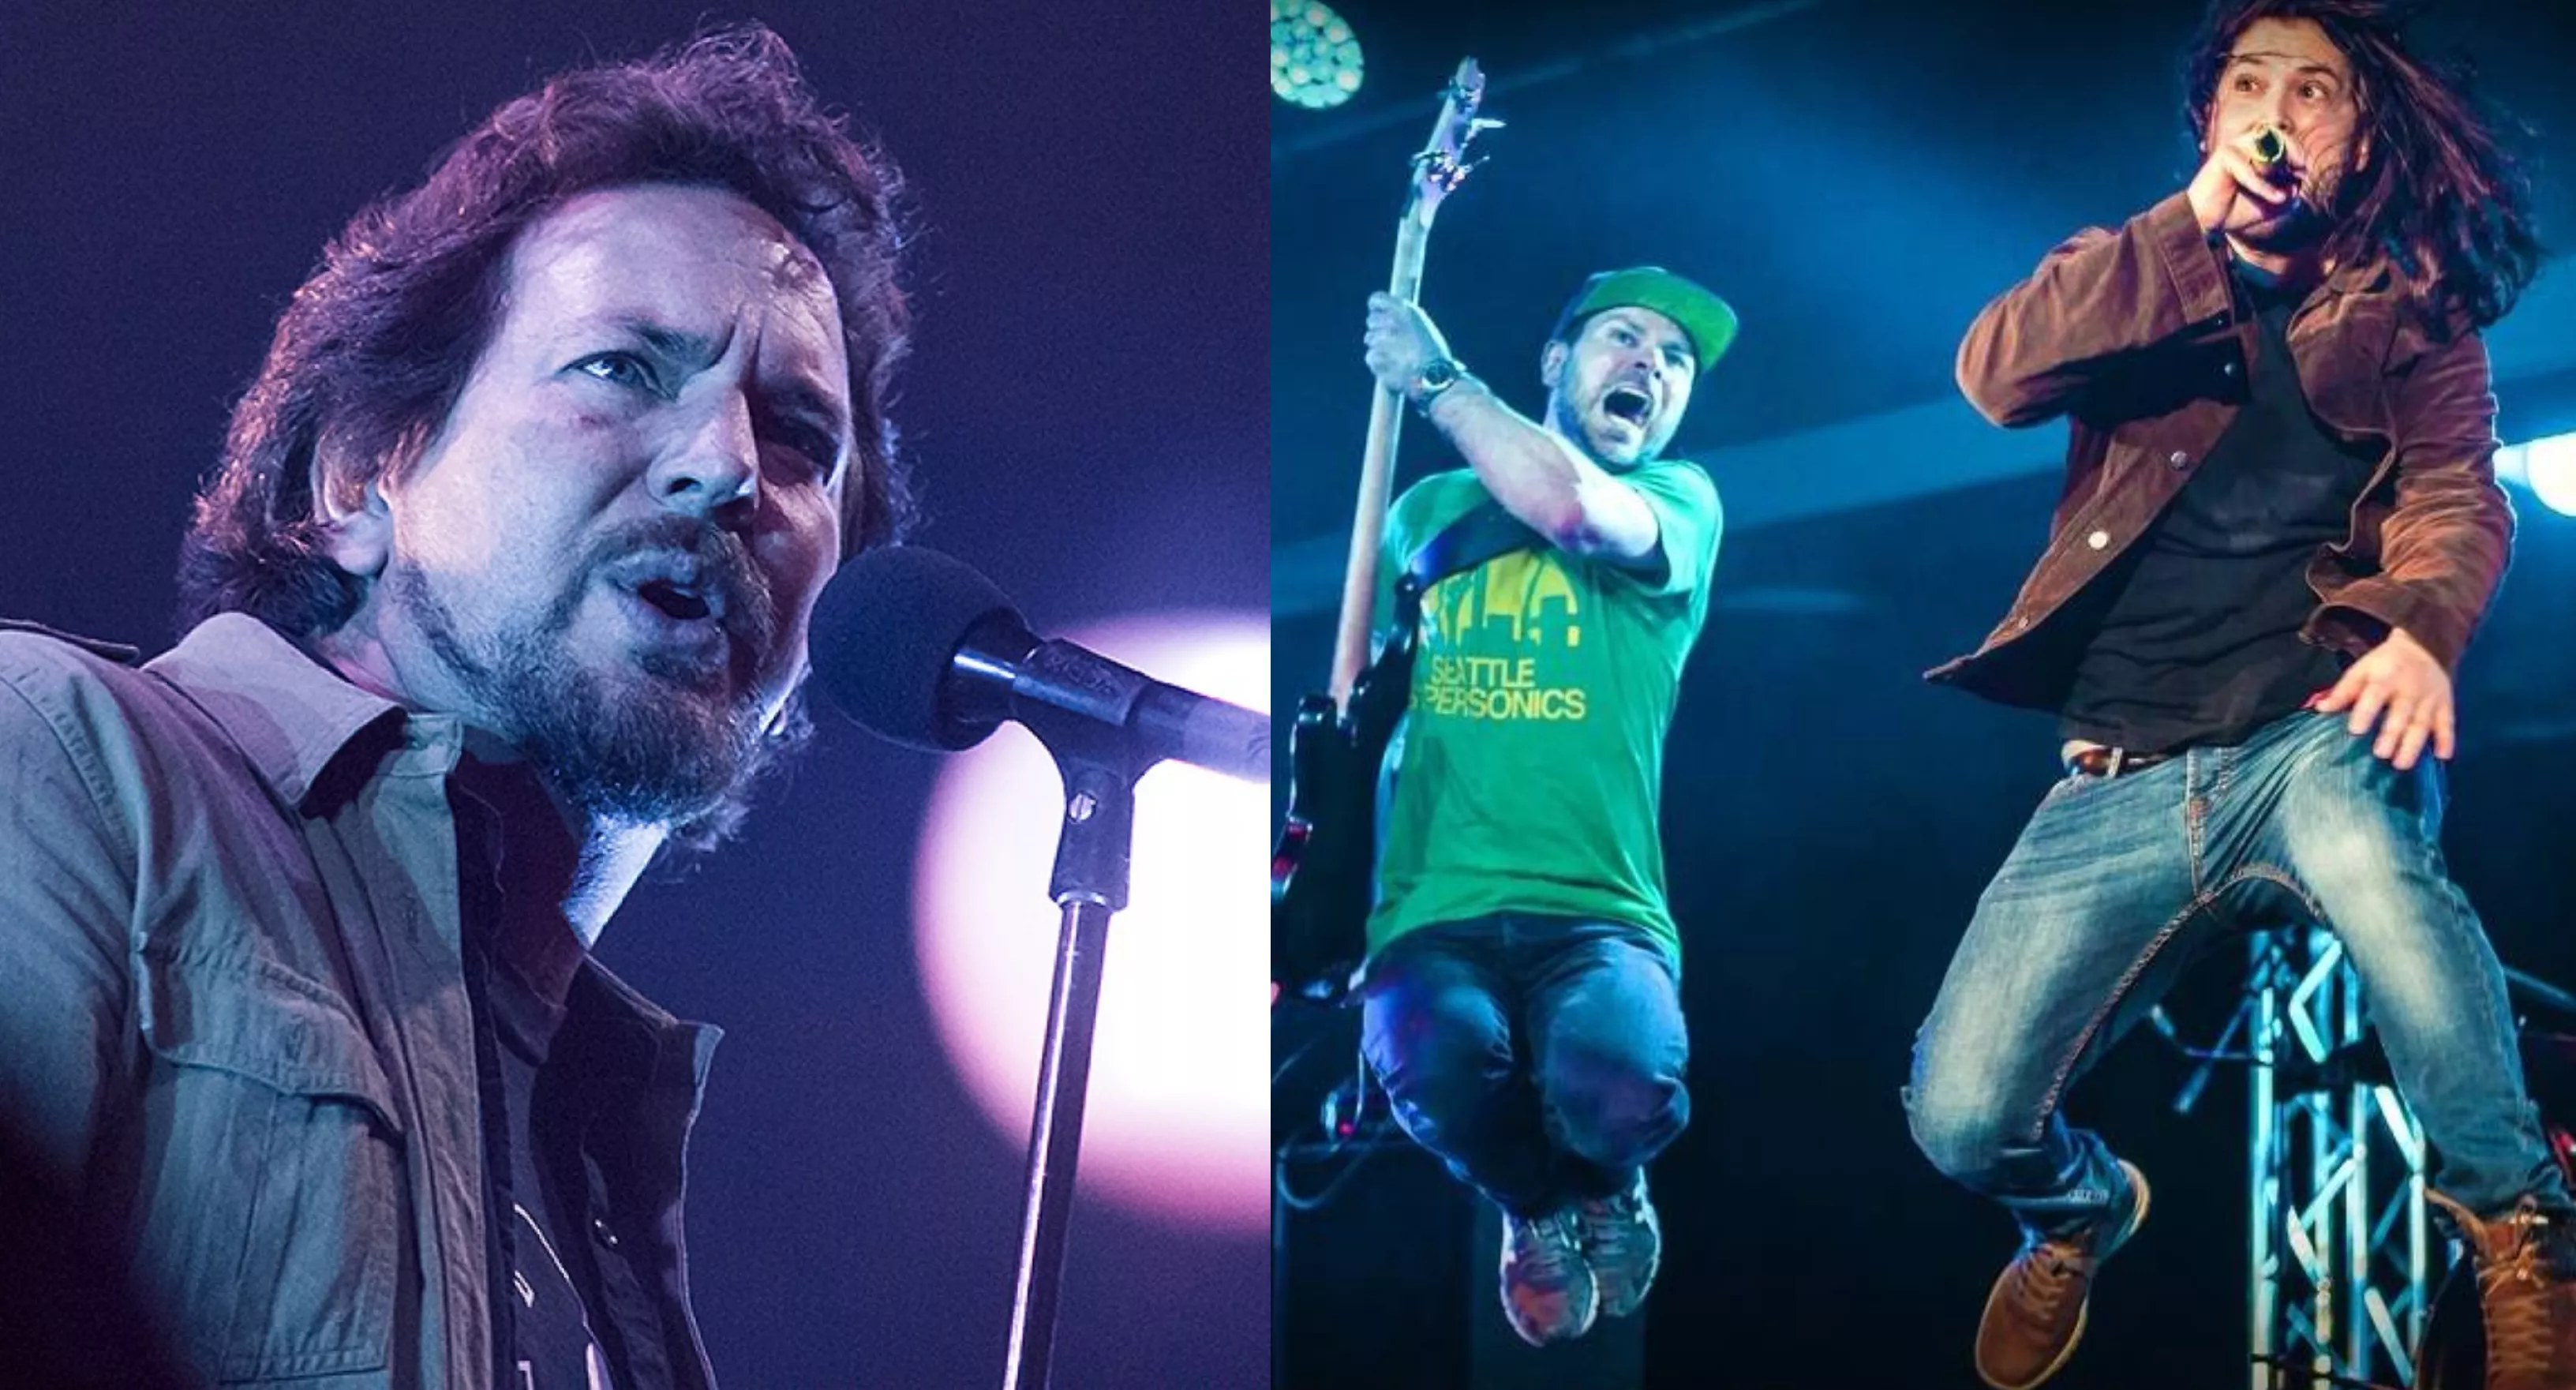 Pearl Jam-kopiband skifter navn efter trusler fra Pearl Jam